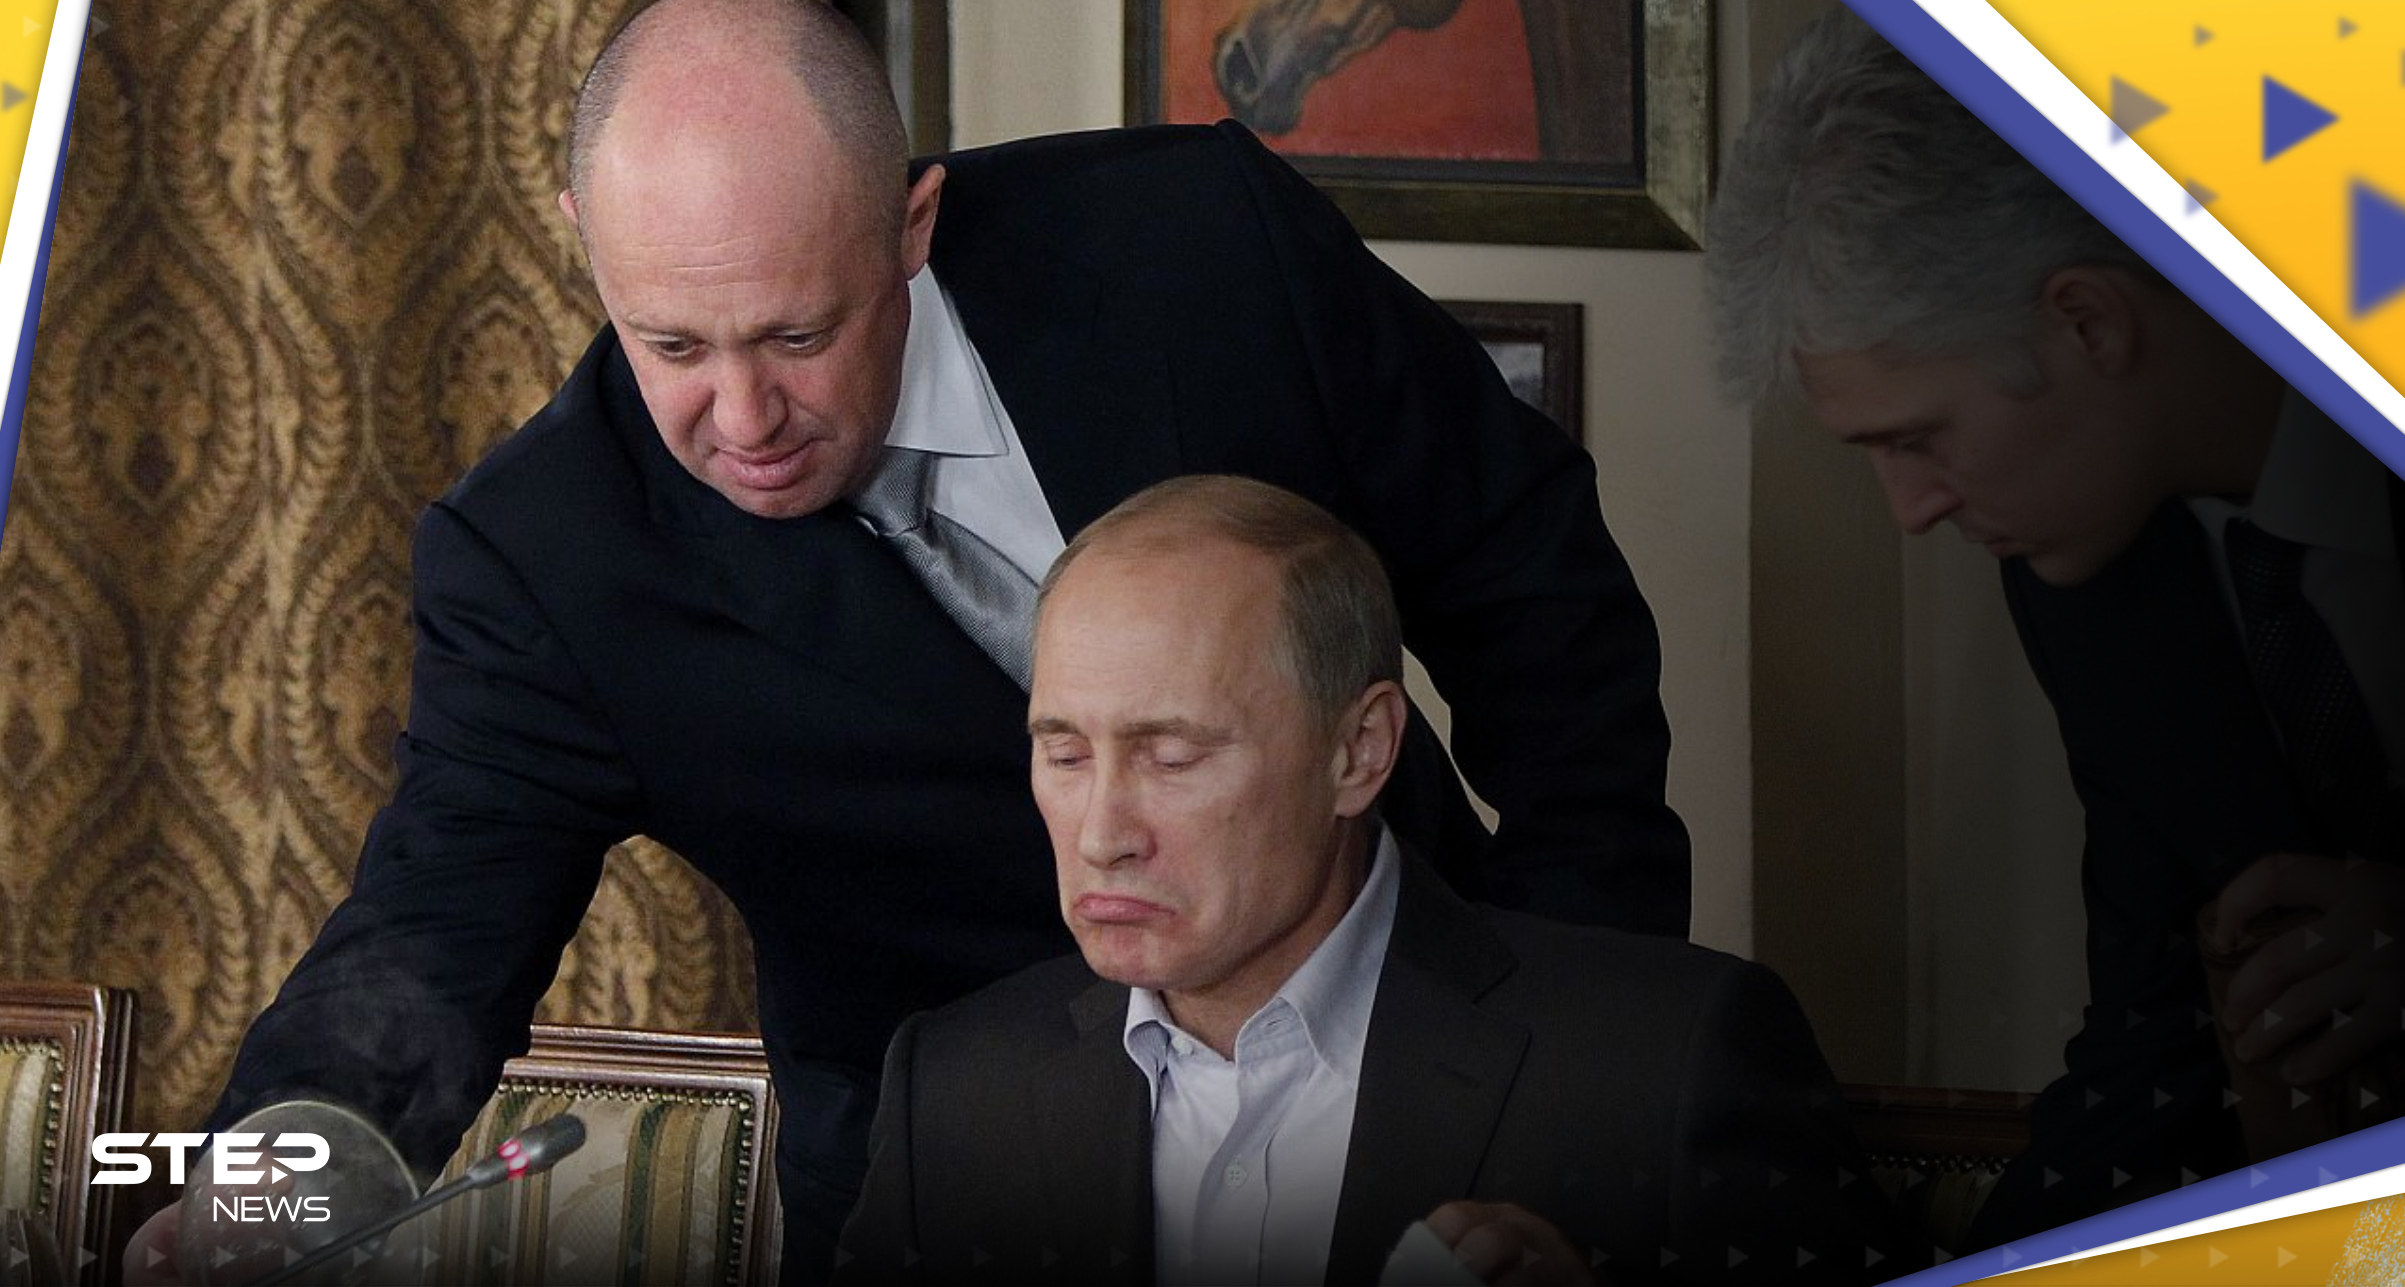 رئيس فاغنر يكشف ماهو "غير طبيعي" بعلاقته مع بوتين بعد إغلاق الكرملين بوجهه